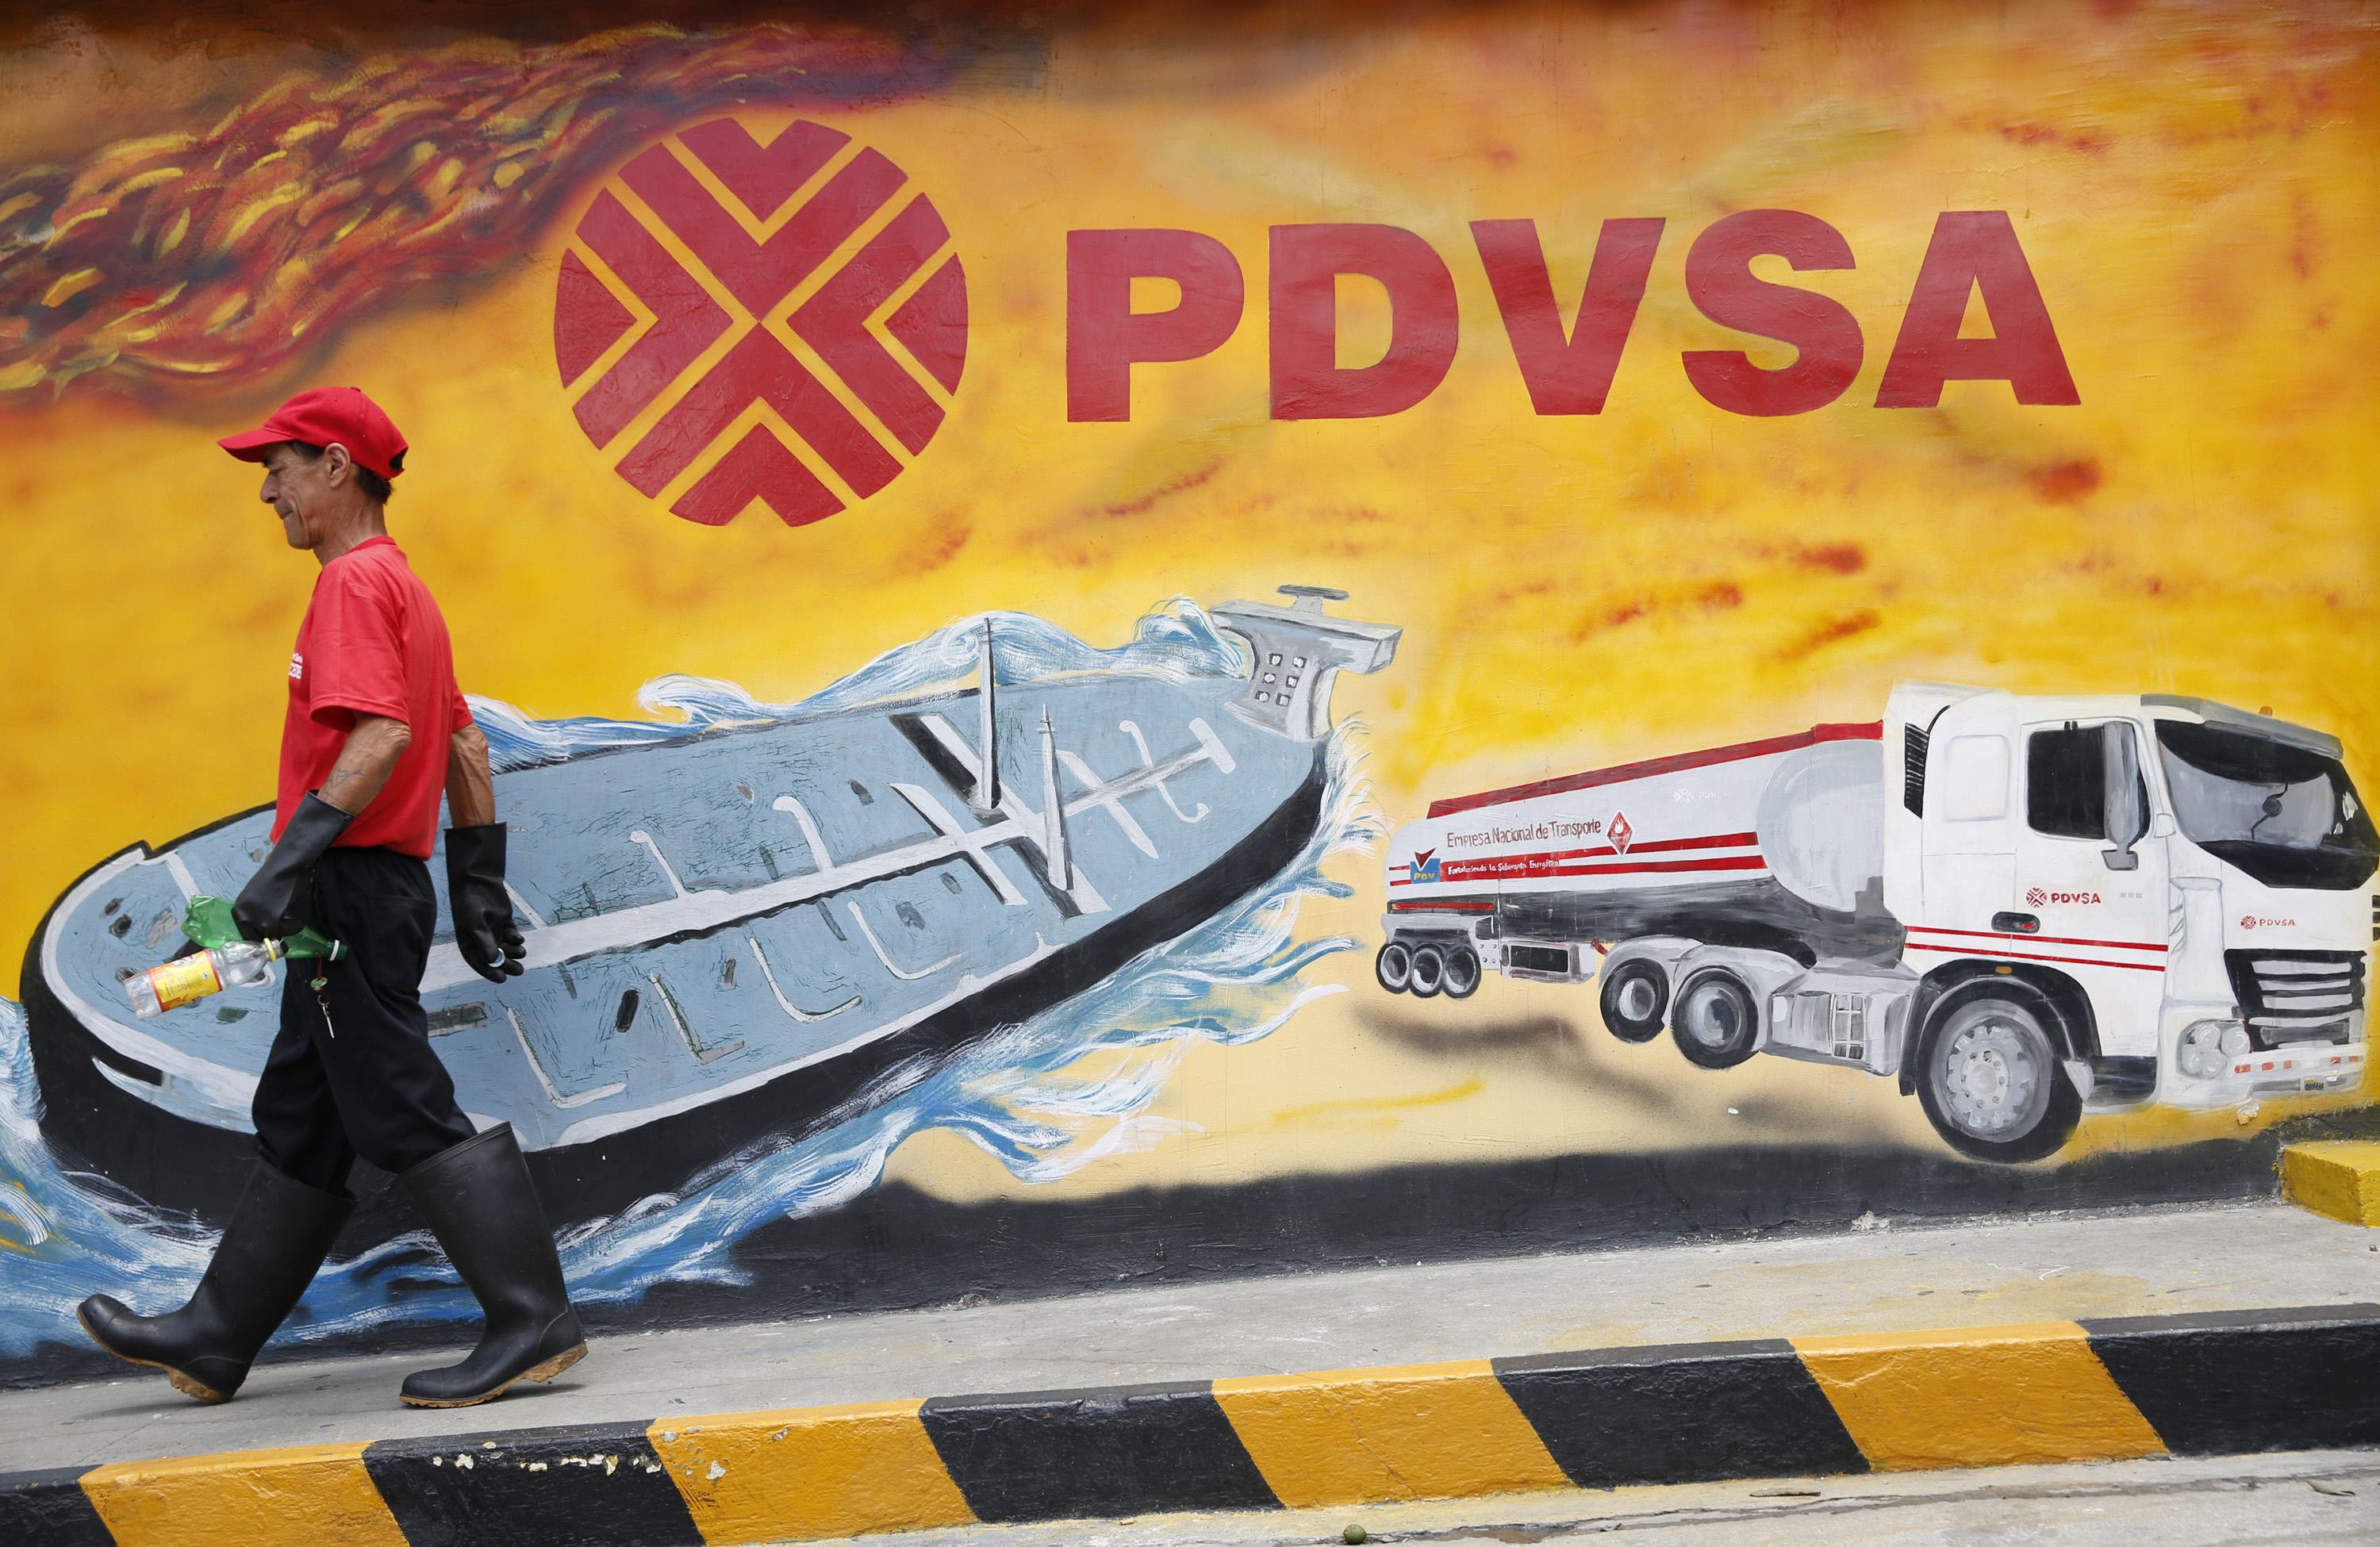 Caída en los precios del petróleo venezolano no encuentra piso